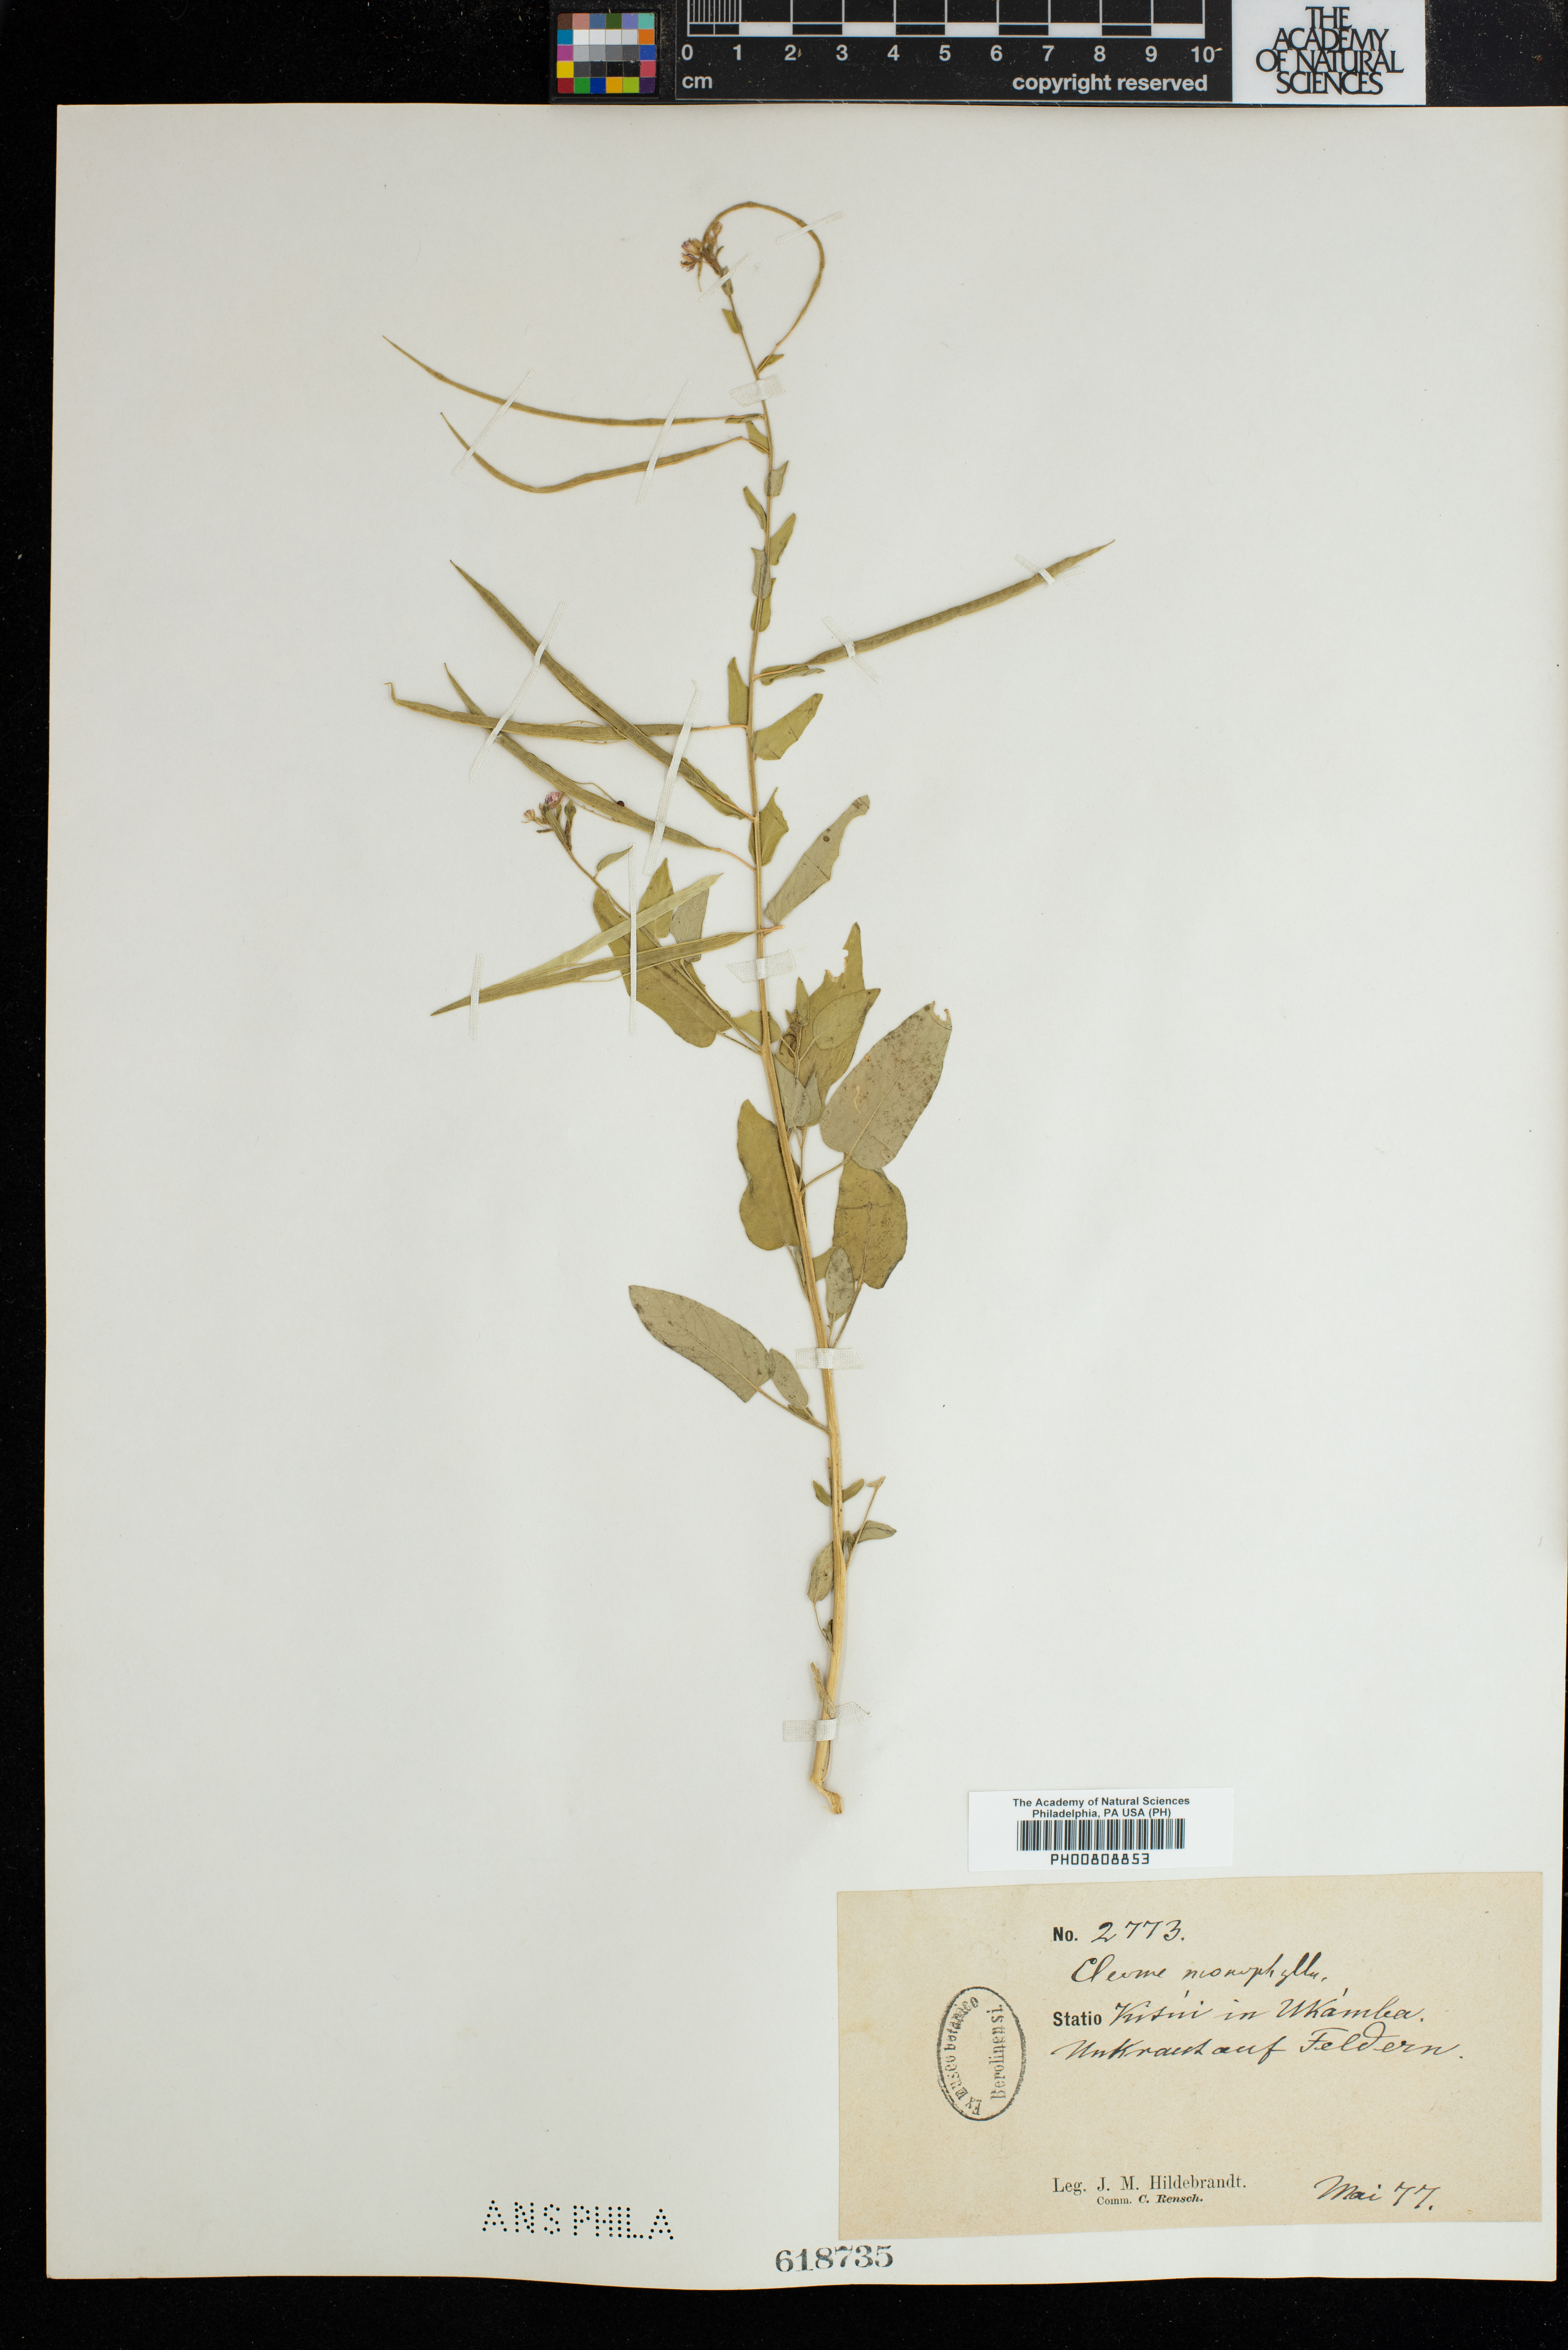 Sieruela monophylla image